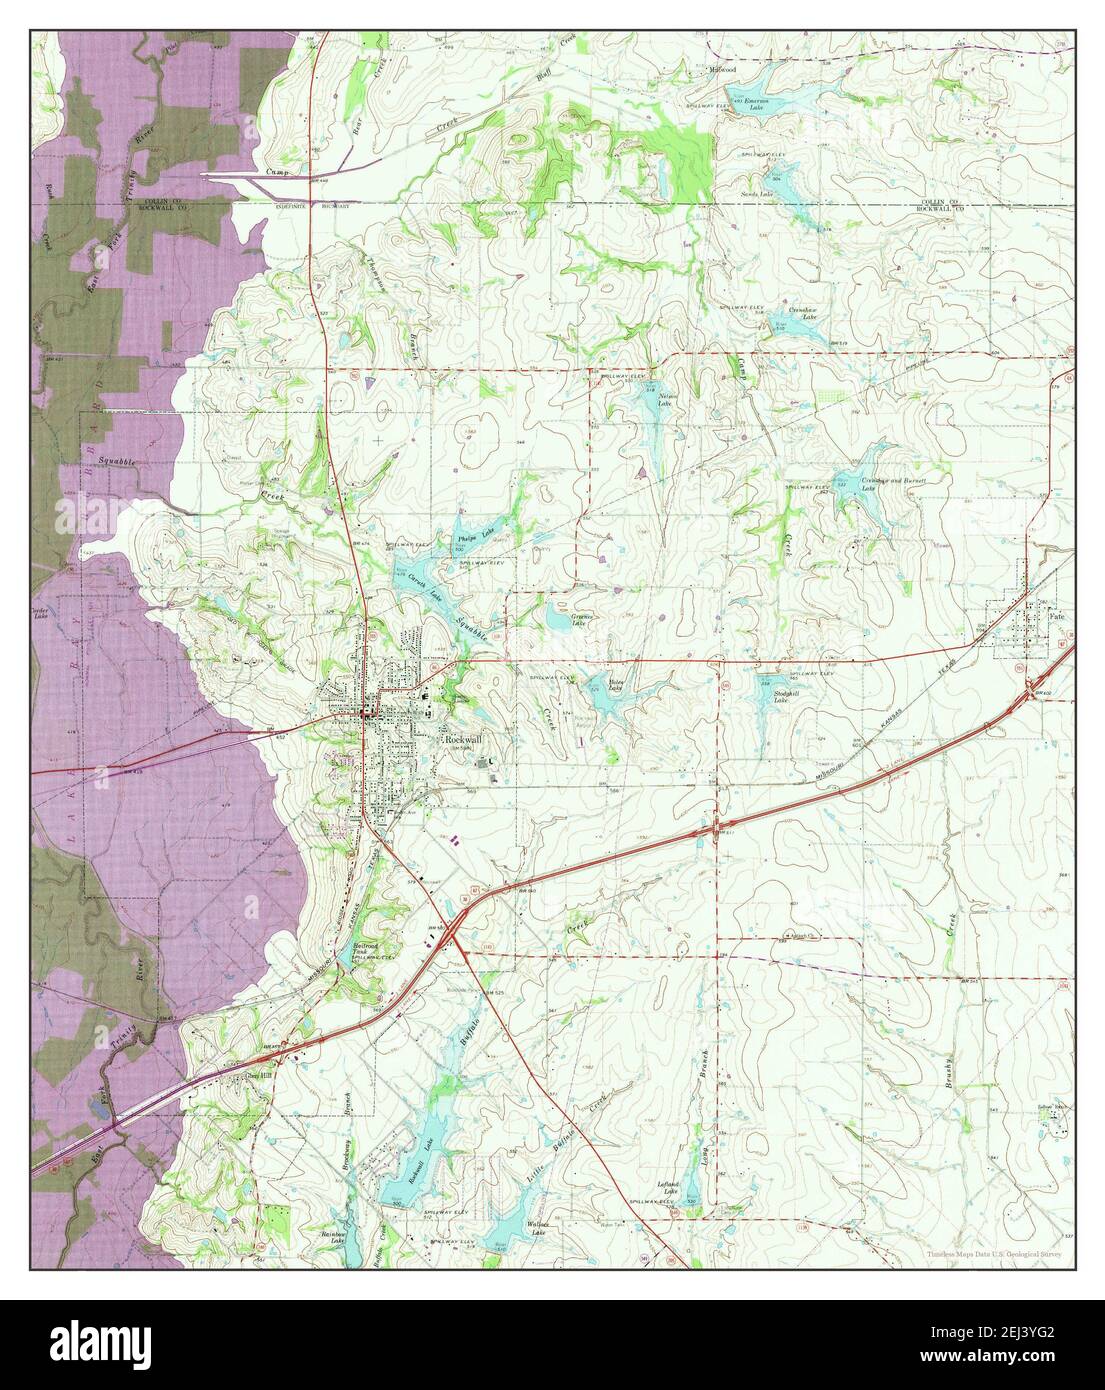 Rockwall, Texas, Karte 1963, 1:24000, Vereinigte Staaten von Amerika von Timeless Maps, Daten U.S. Geological Survey Stockfoto